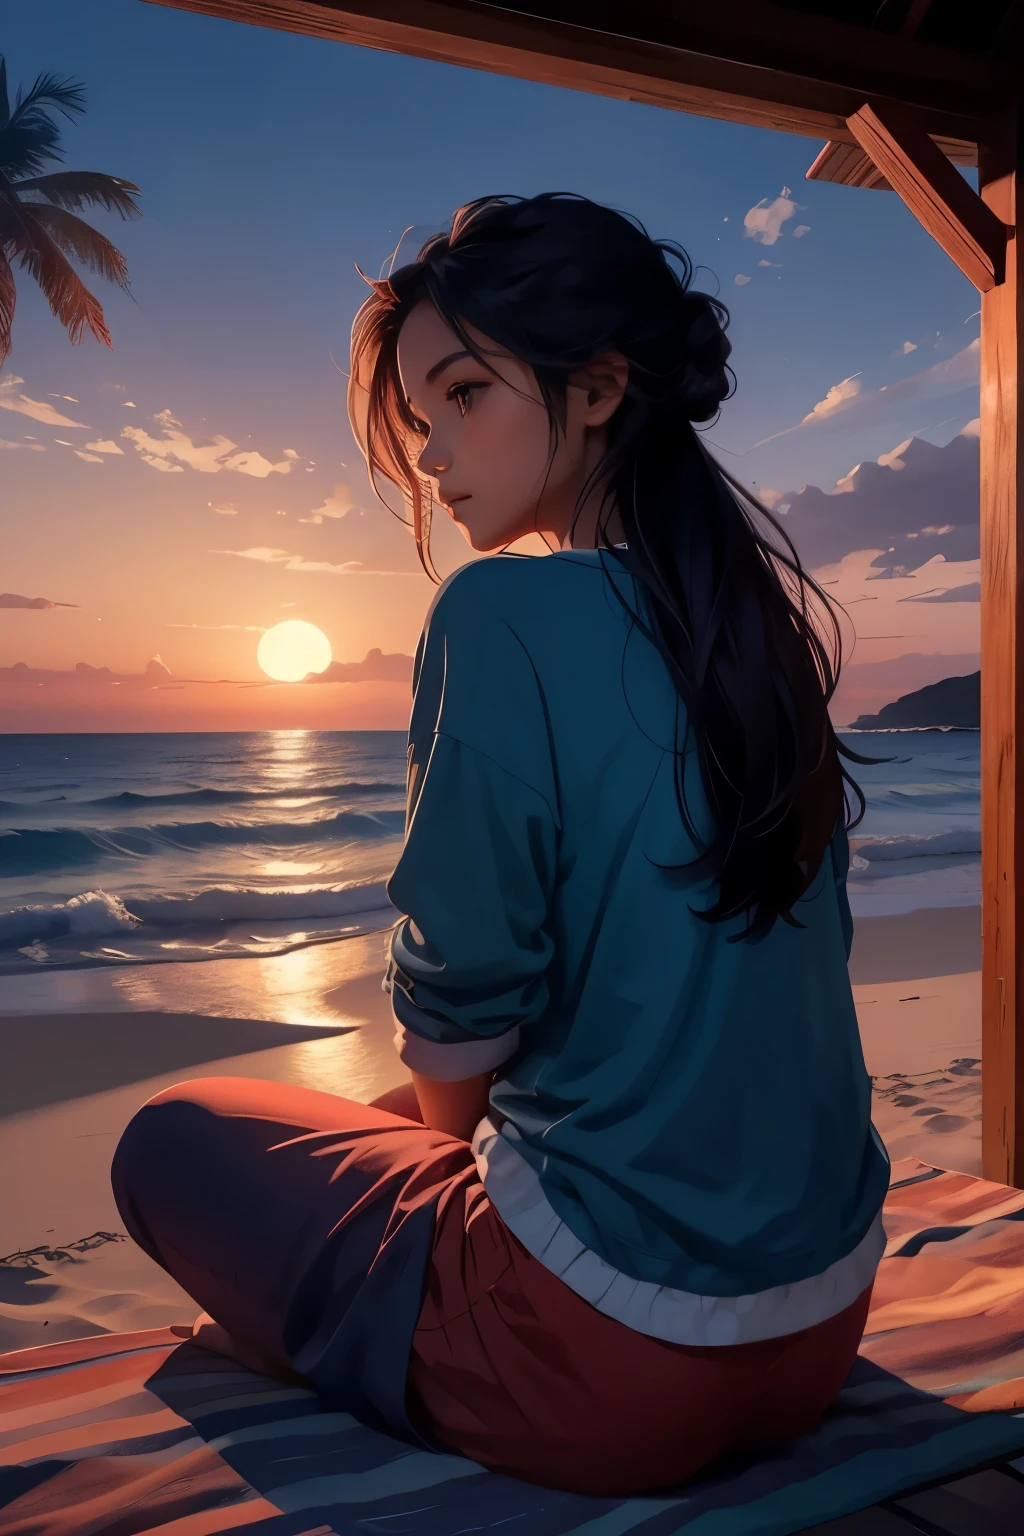 붉은 푸른 그늘의 일몰을 배경으로 해변에 편안한 옷을 입고 앉아 있는 소녀의 뒷면 사진, 그녀의 손에 있는 조개껍데기를 바라보는 차분하고 고요한 분위기